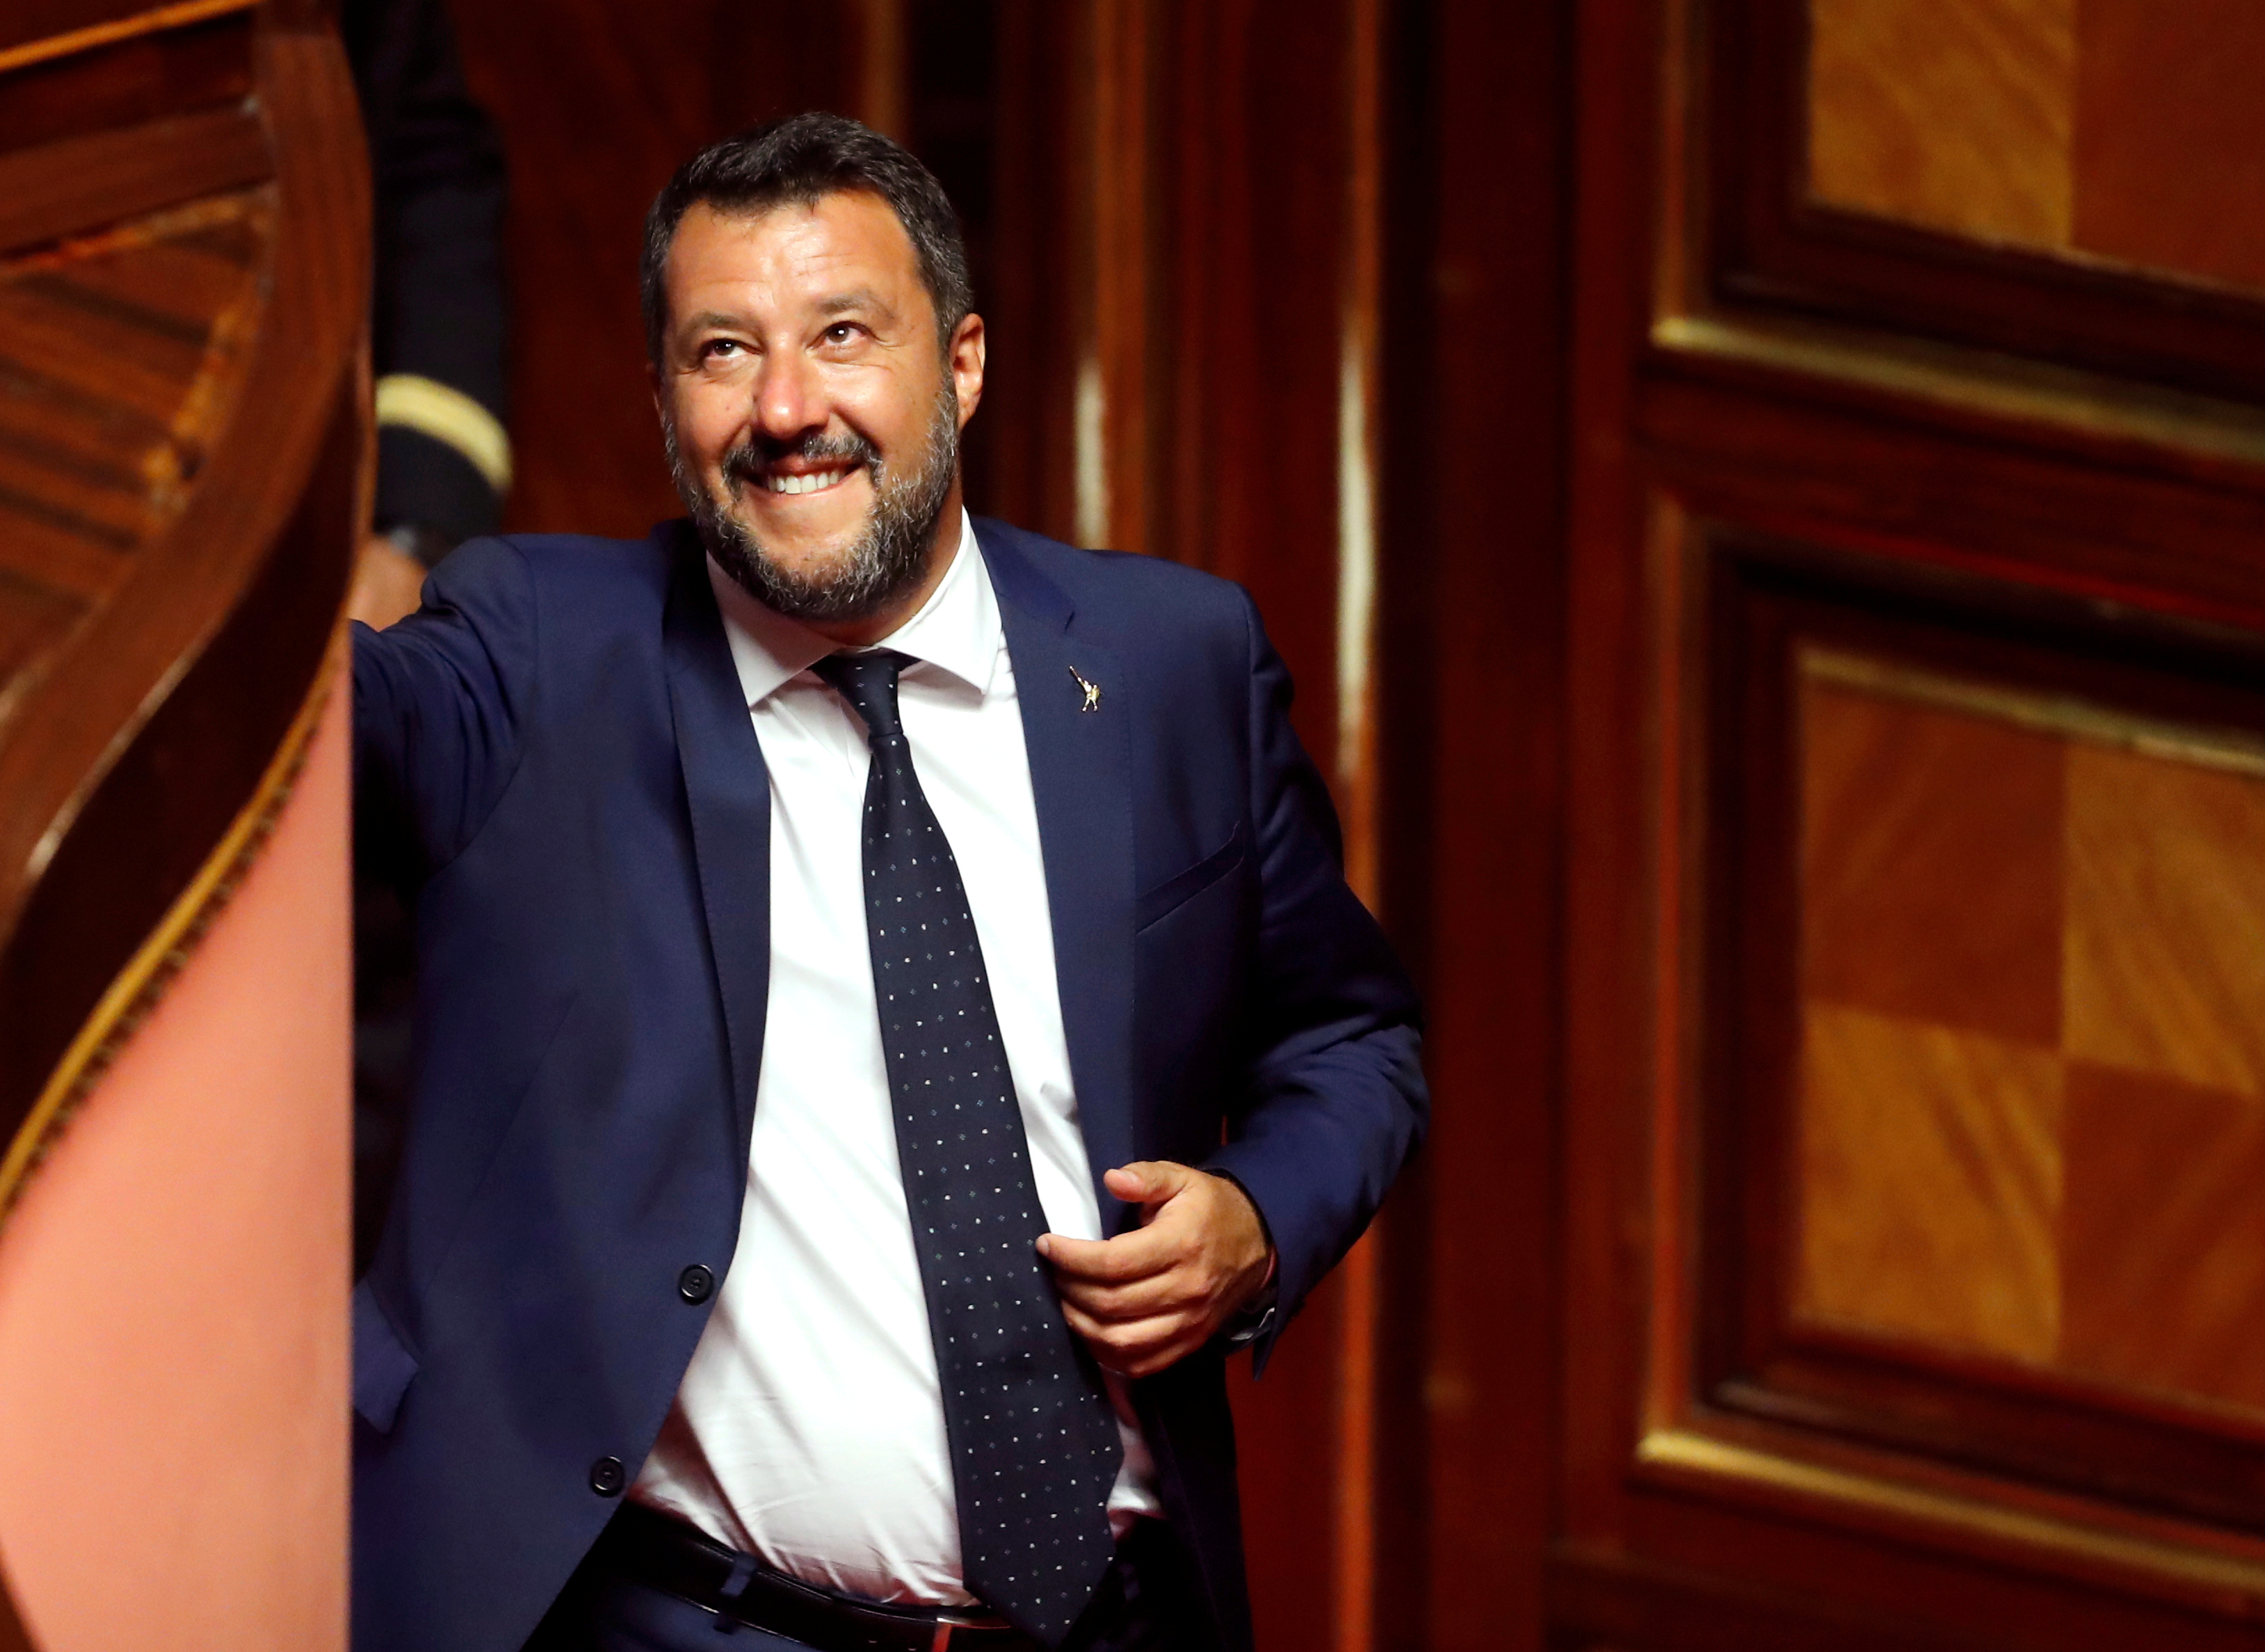 Ιταλία: Ο Σαλβίνι καταθέτει πρόταση μομφής κατά της κυβέρνησης του!